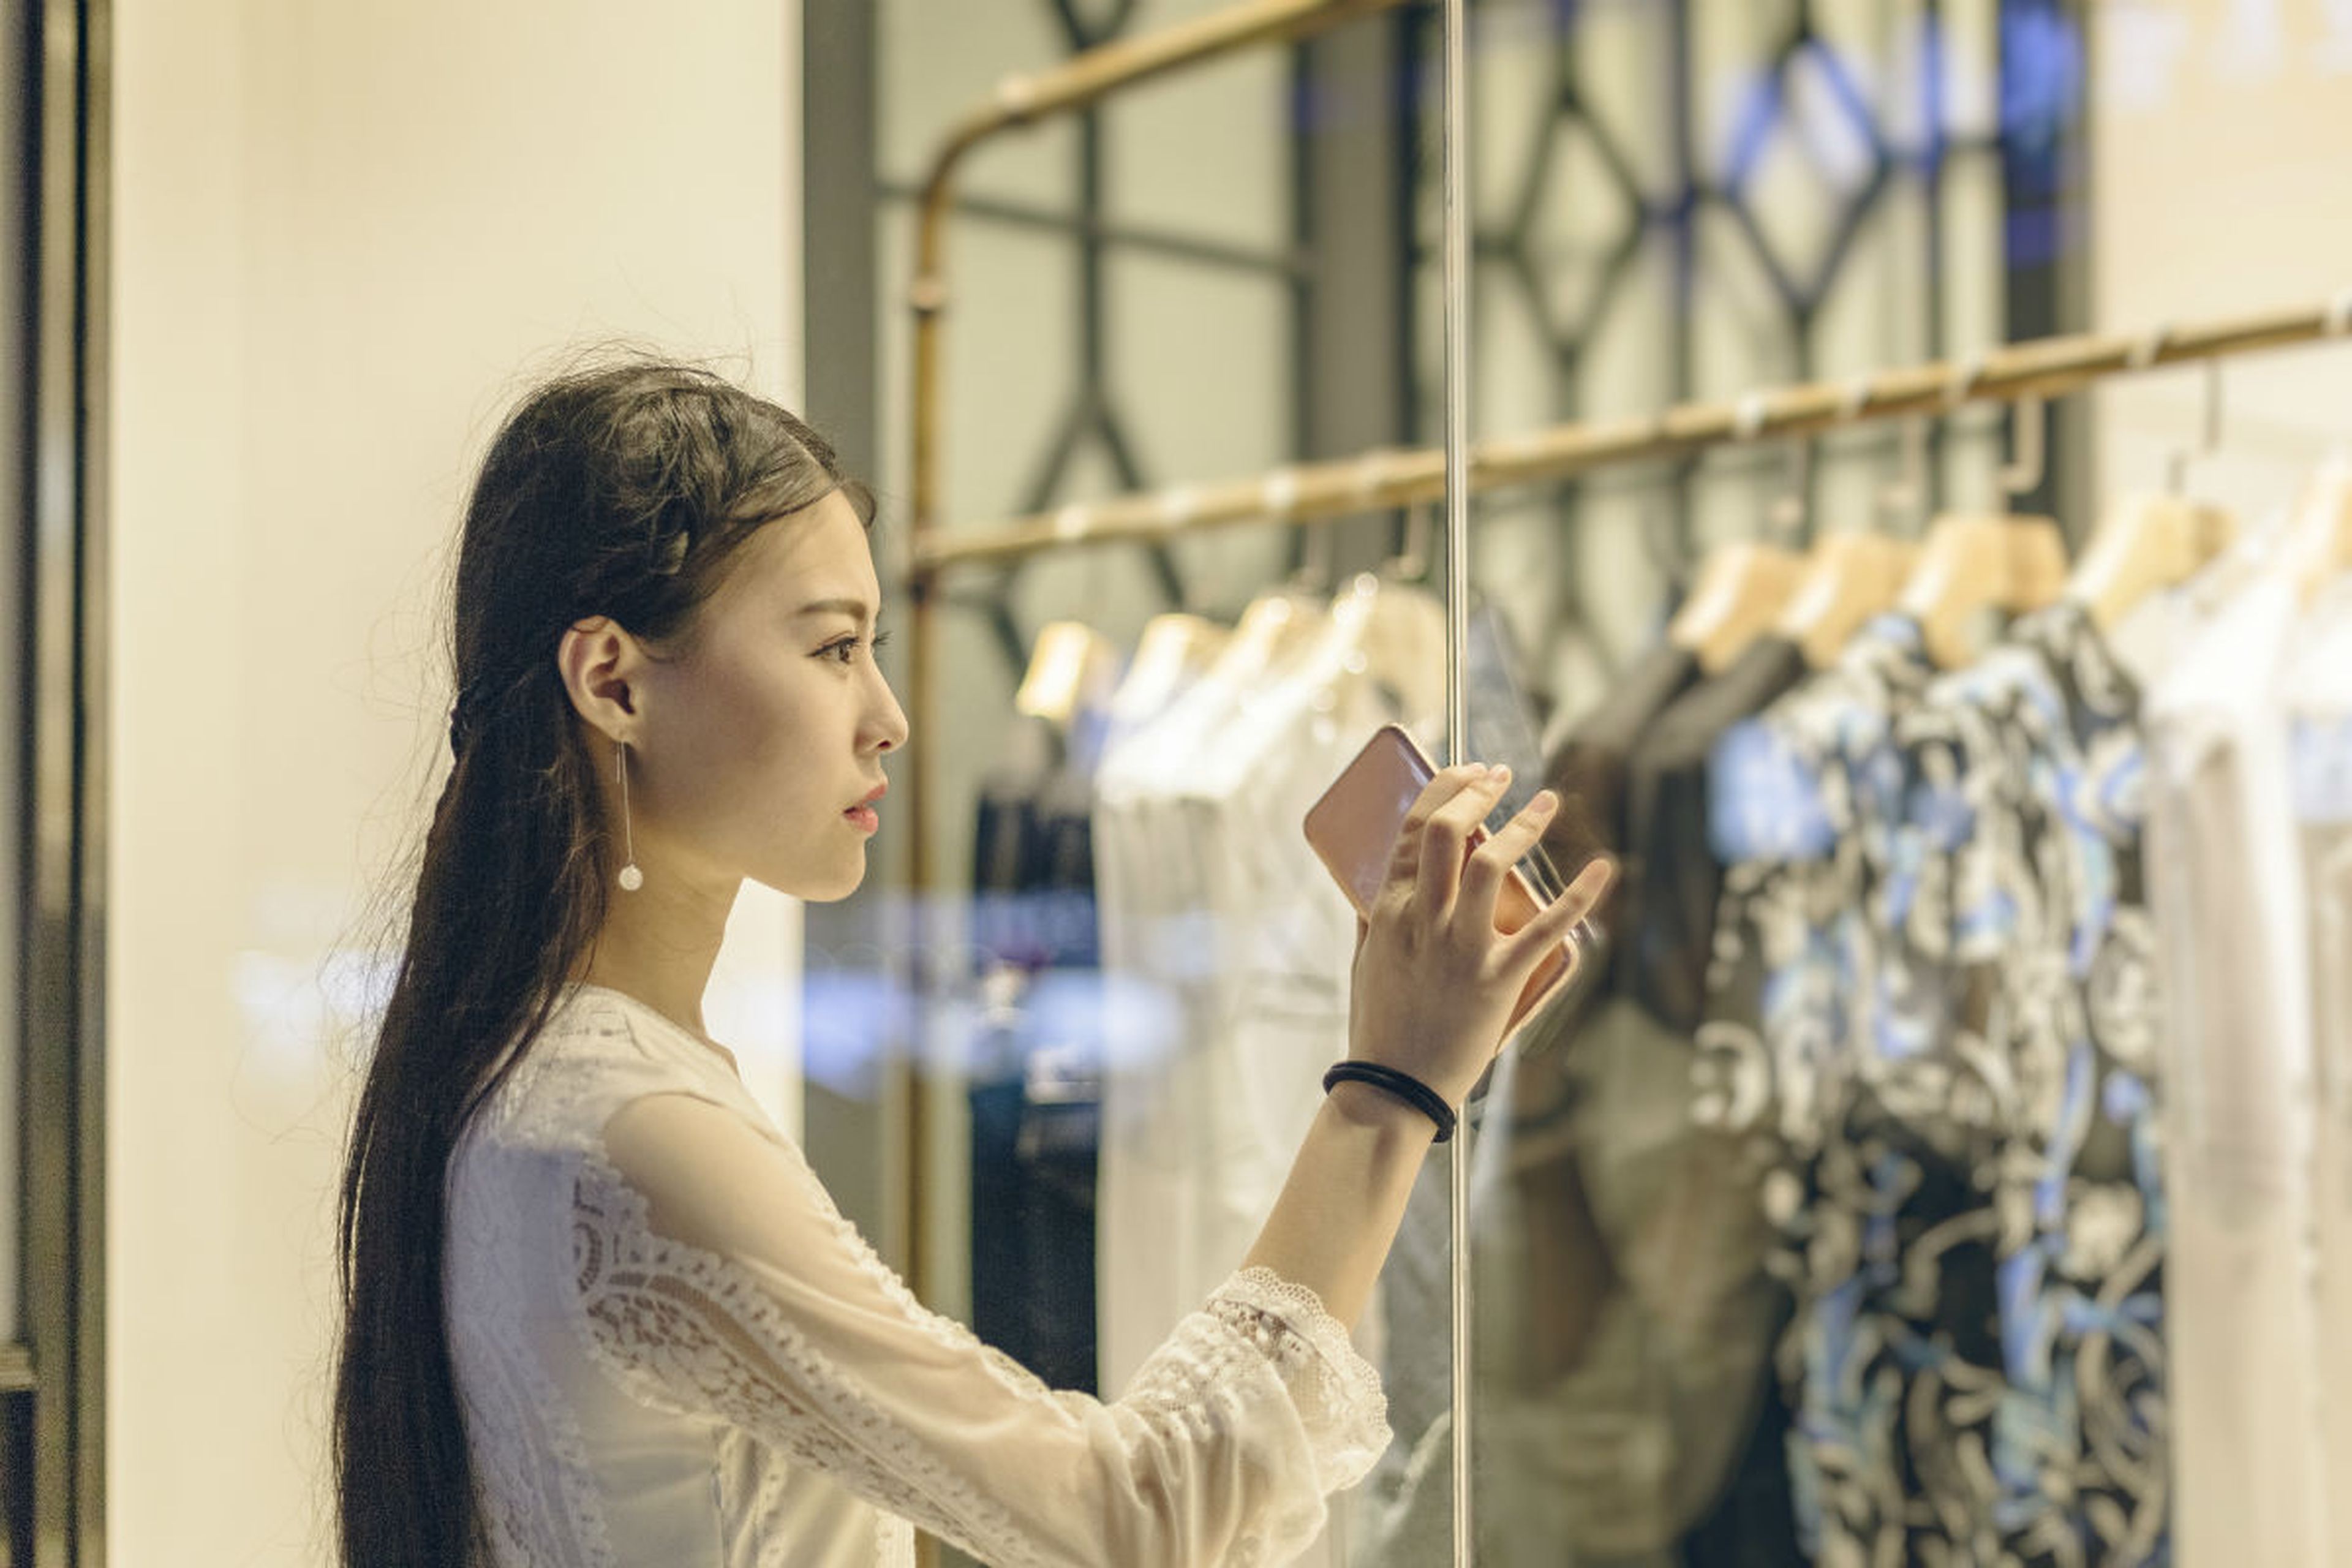 Una mujer observa el escaparate de una tienda de moda en Pekín